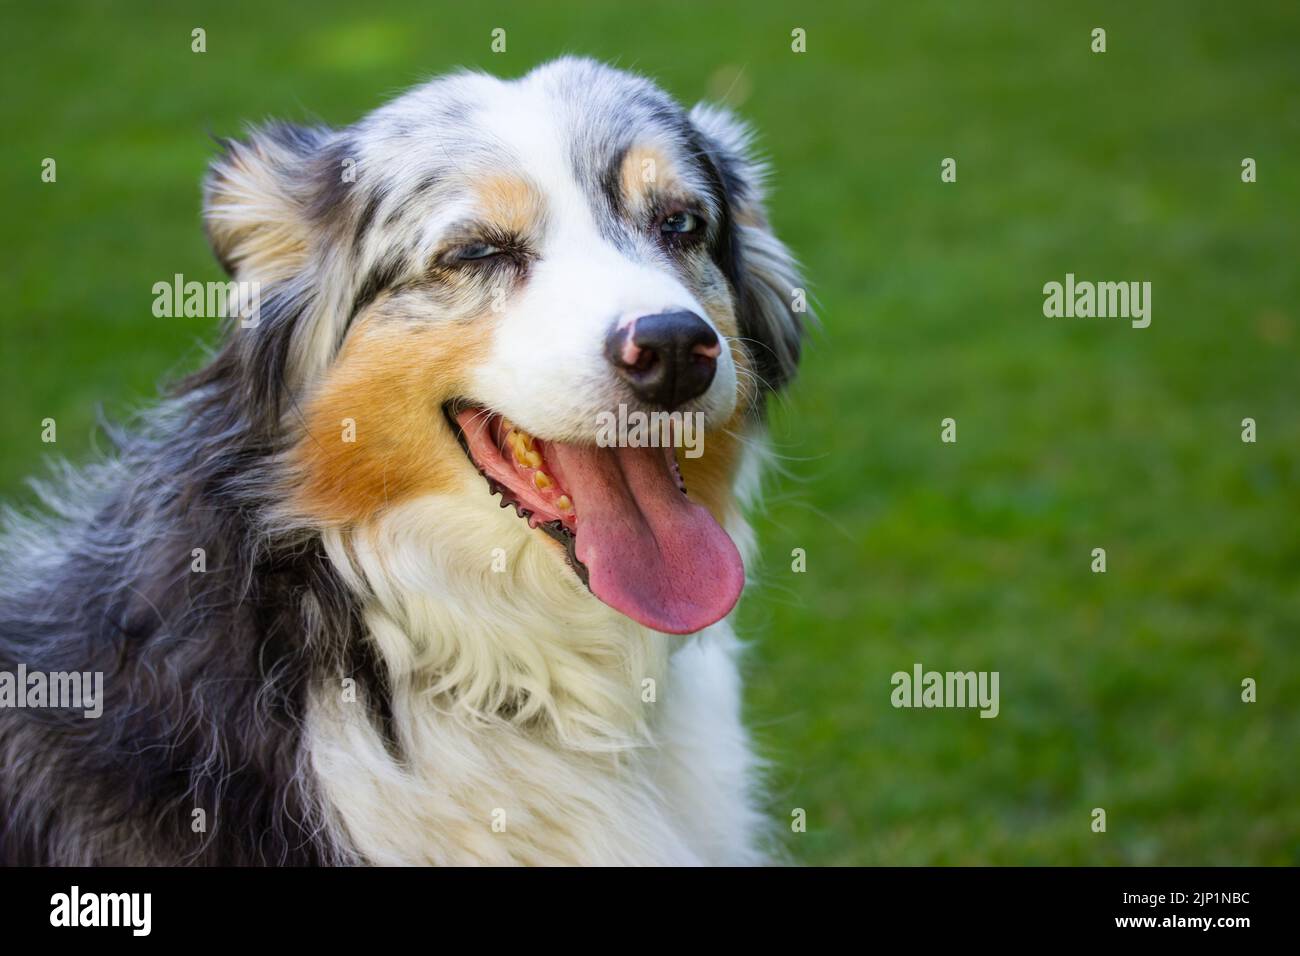 Portrait de berger australien, langue dans le parc. Tricolore canine, yeux bleus Banque D'Images